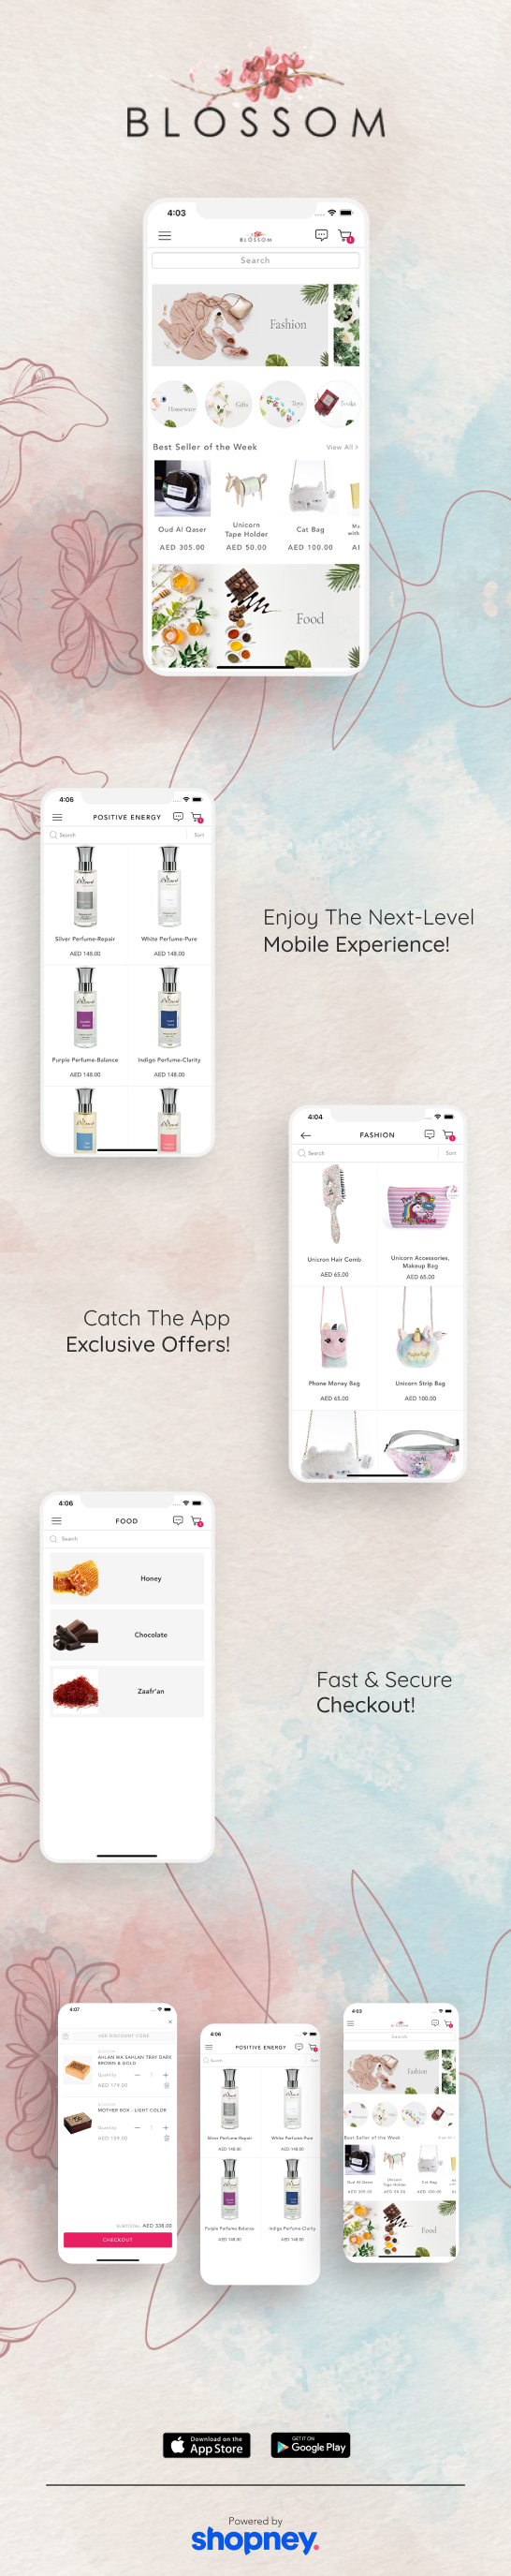 the mobile app design of Blossom app